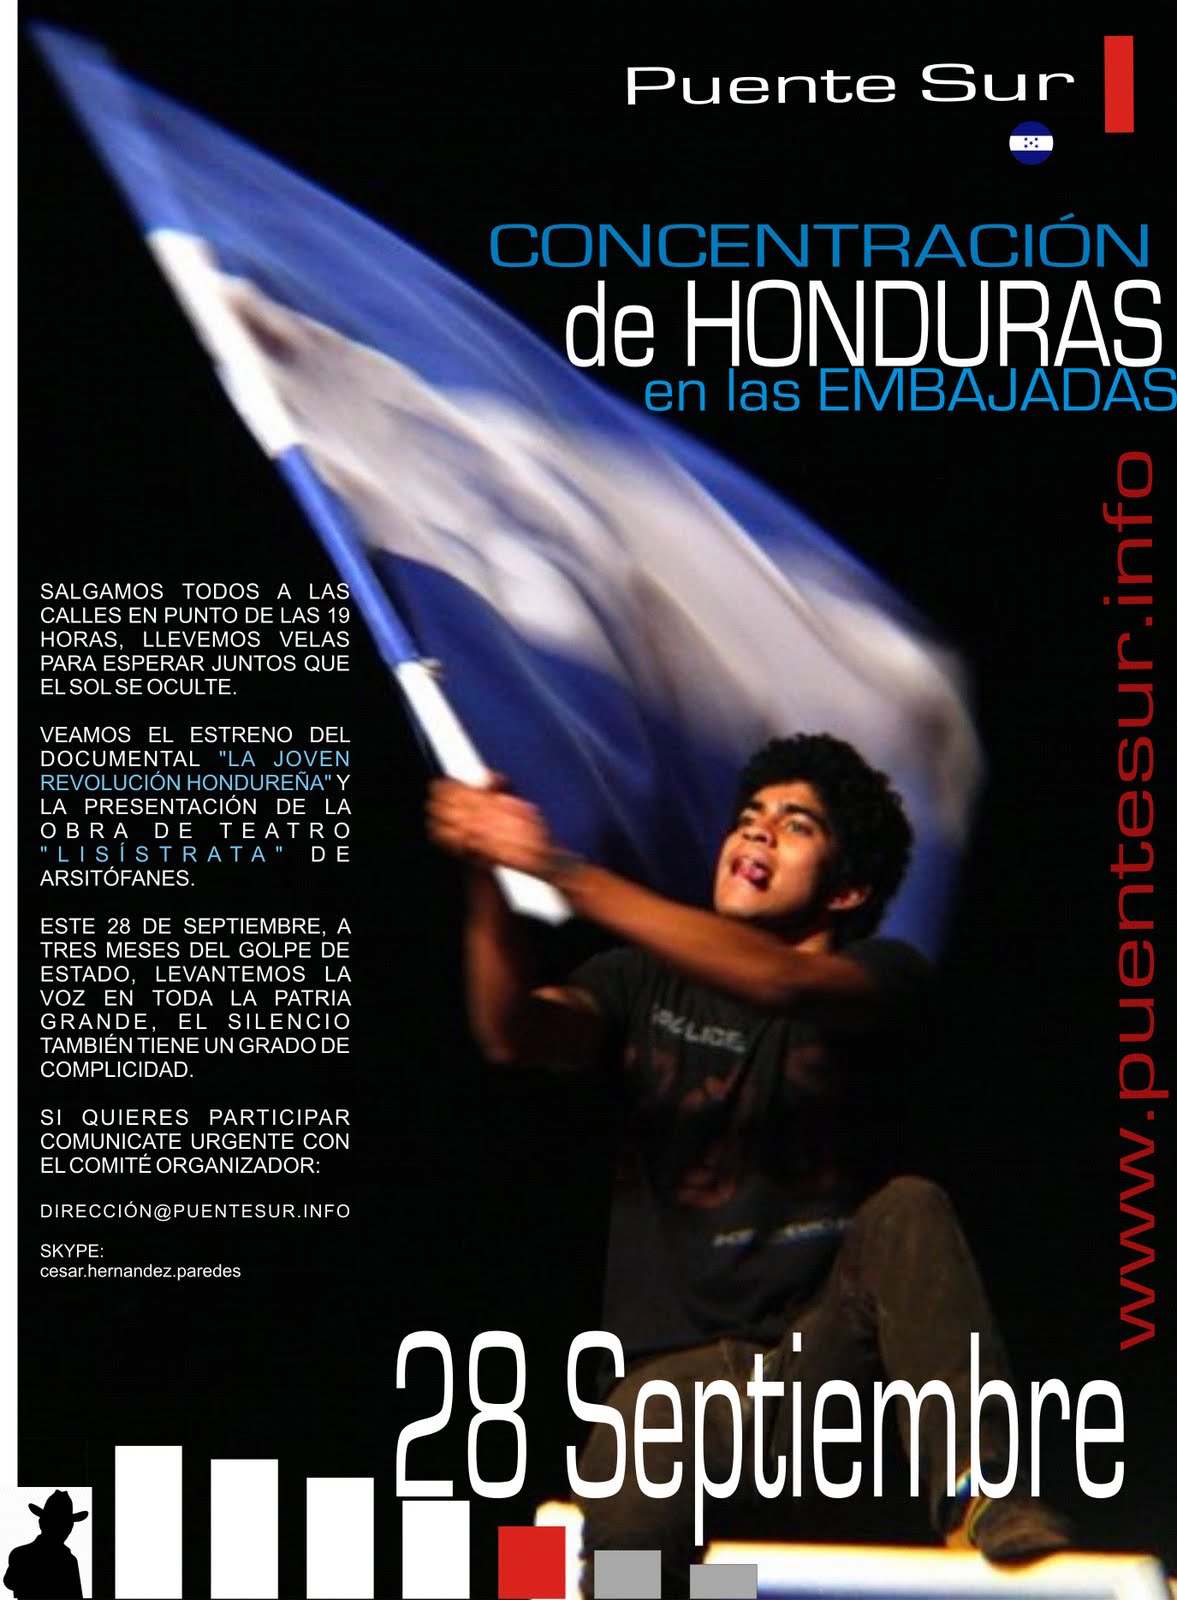 Rechazo Mundial contra el golpe de estado en Honduras el 28 de septiembre